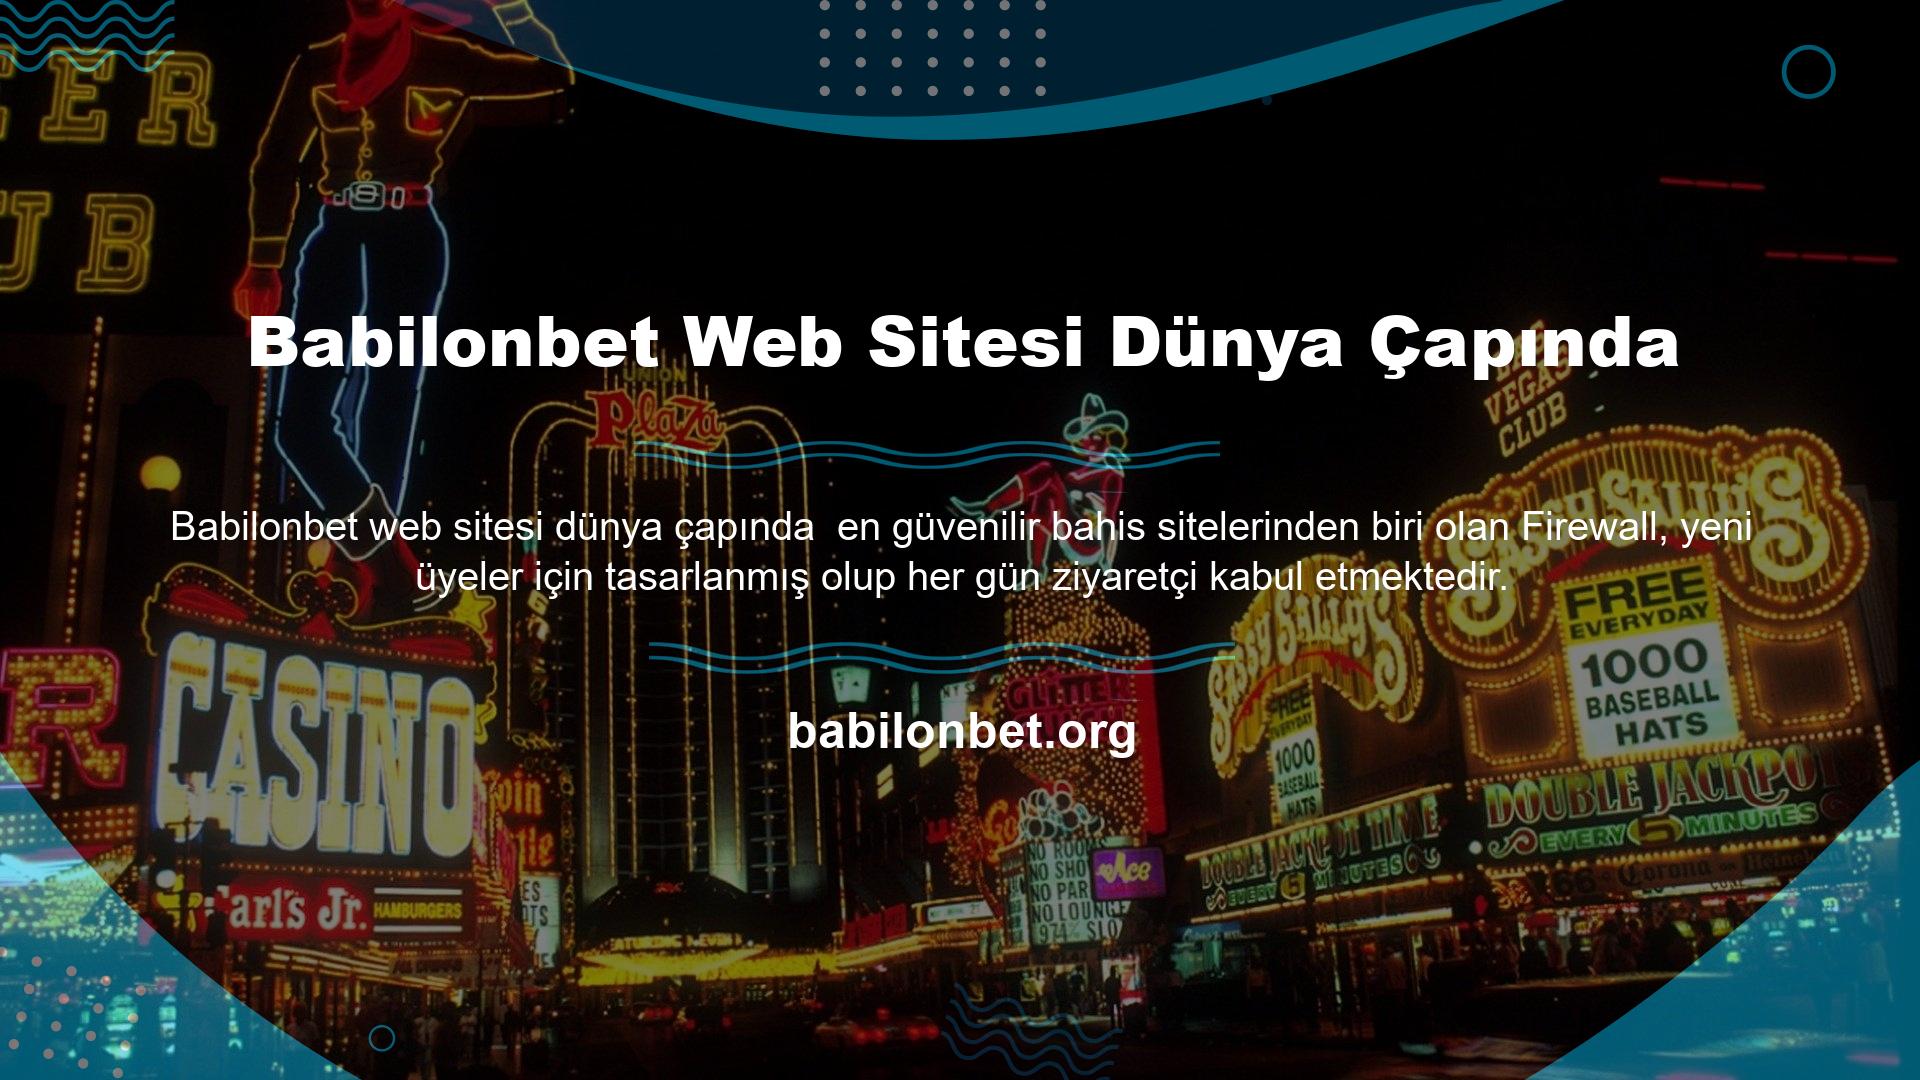 Babilonbet web sitesi dünya çapında kullanılan ayrıcalıklı bir platformdur ve geniş bir uluslararası kitleye hitap etmektedir